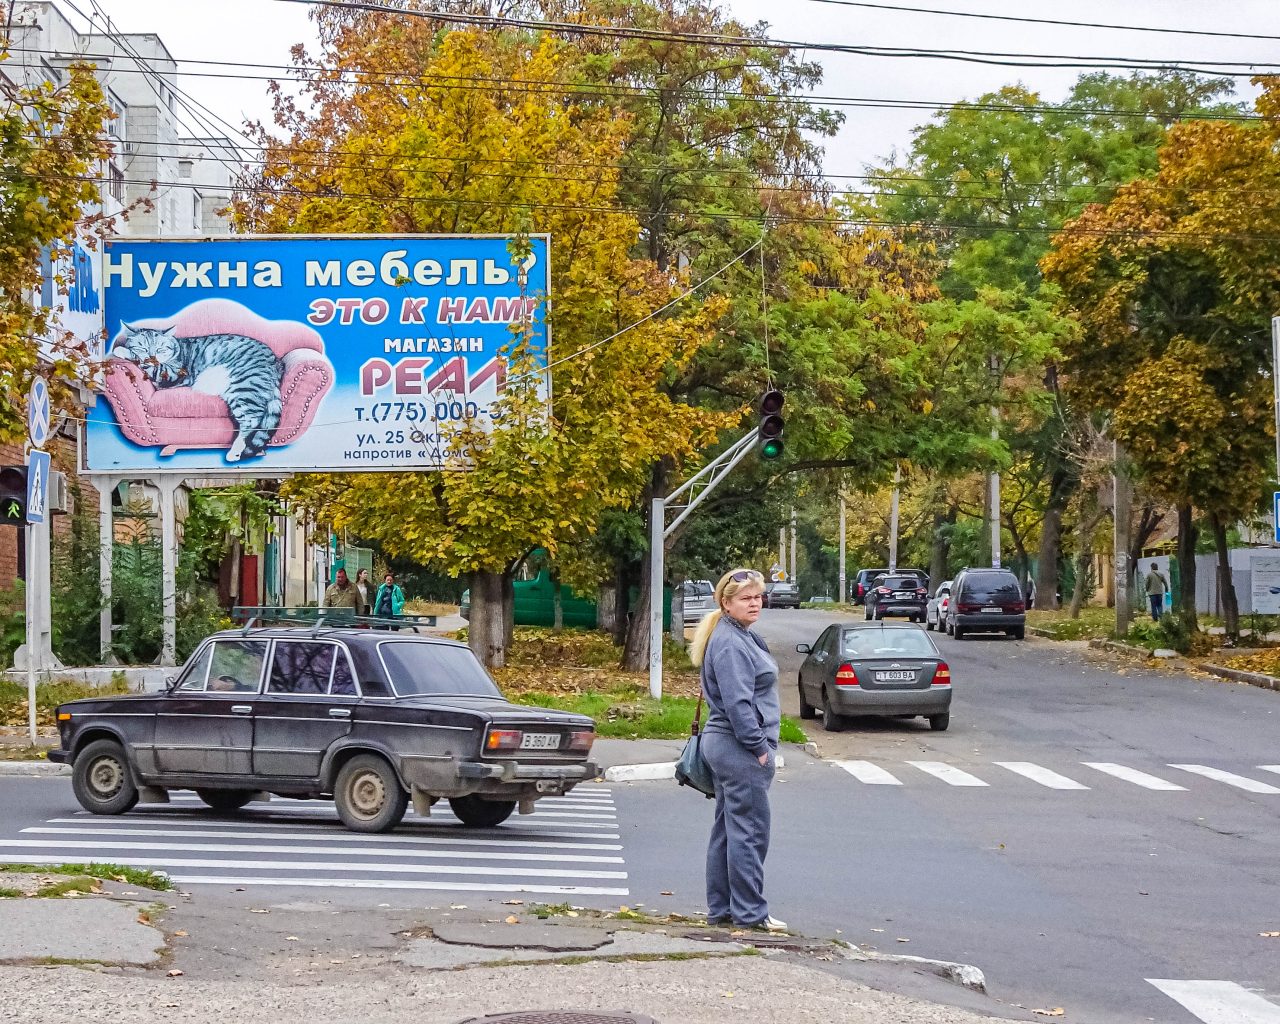 Oude-auto-en-kijkende-vrouw-Tiraspol